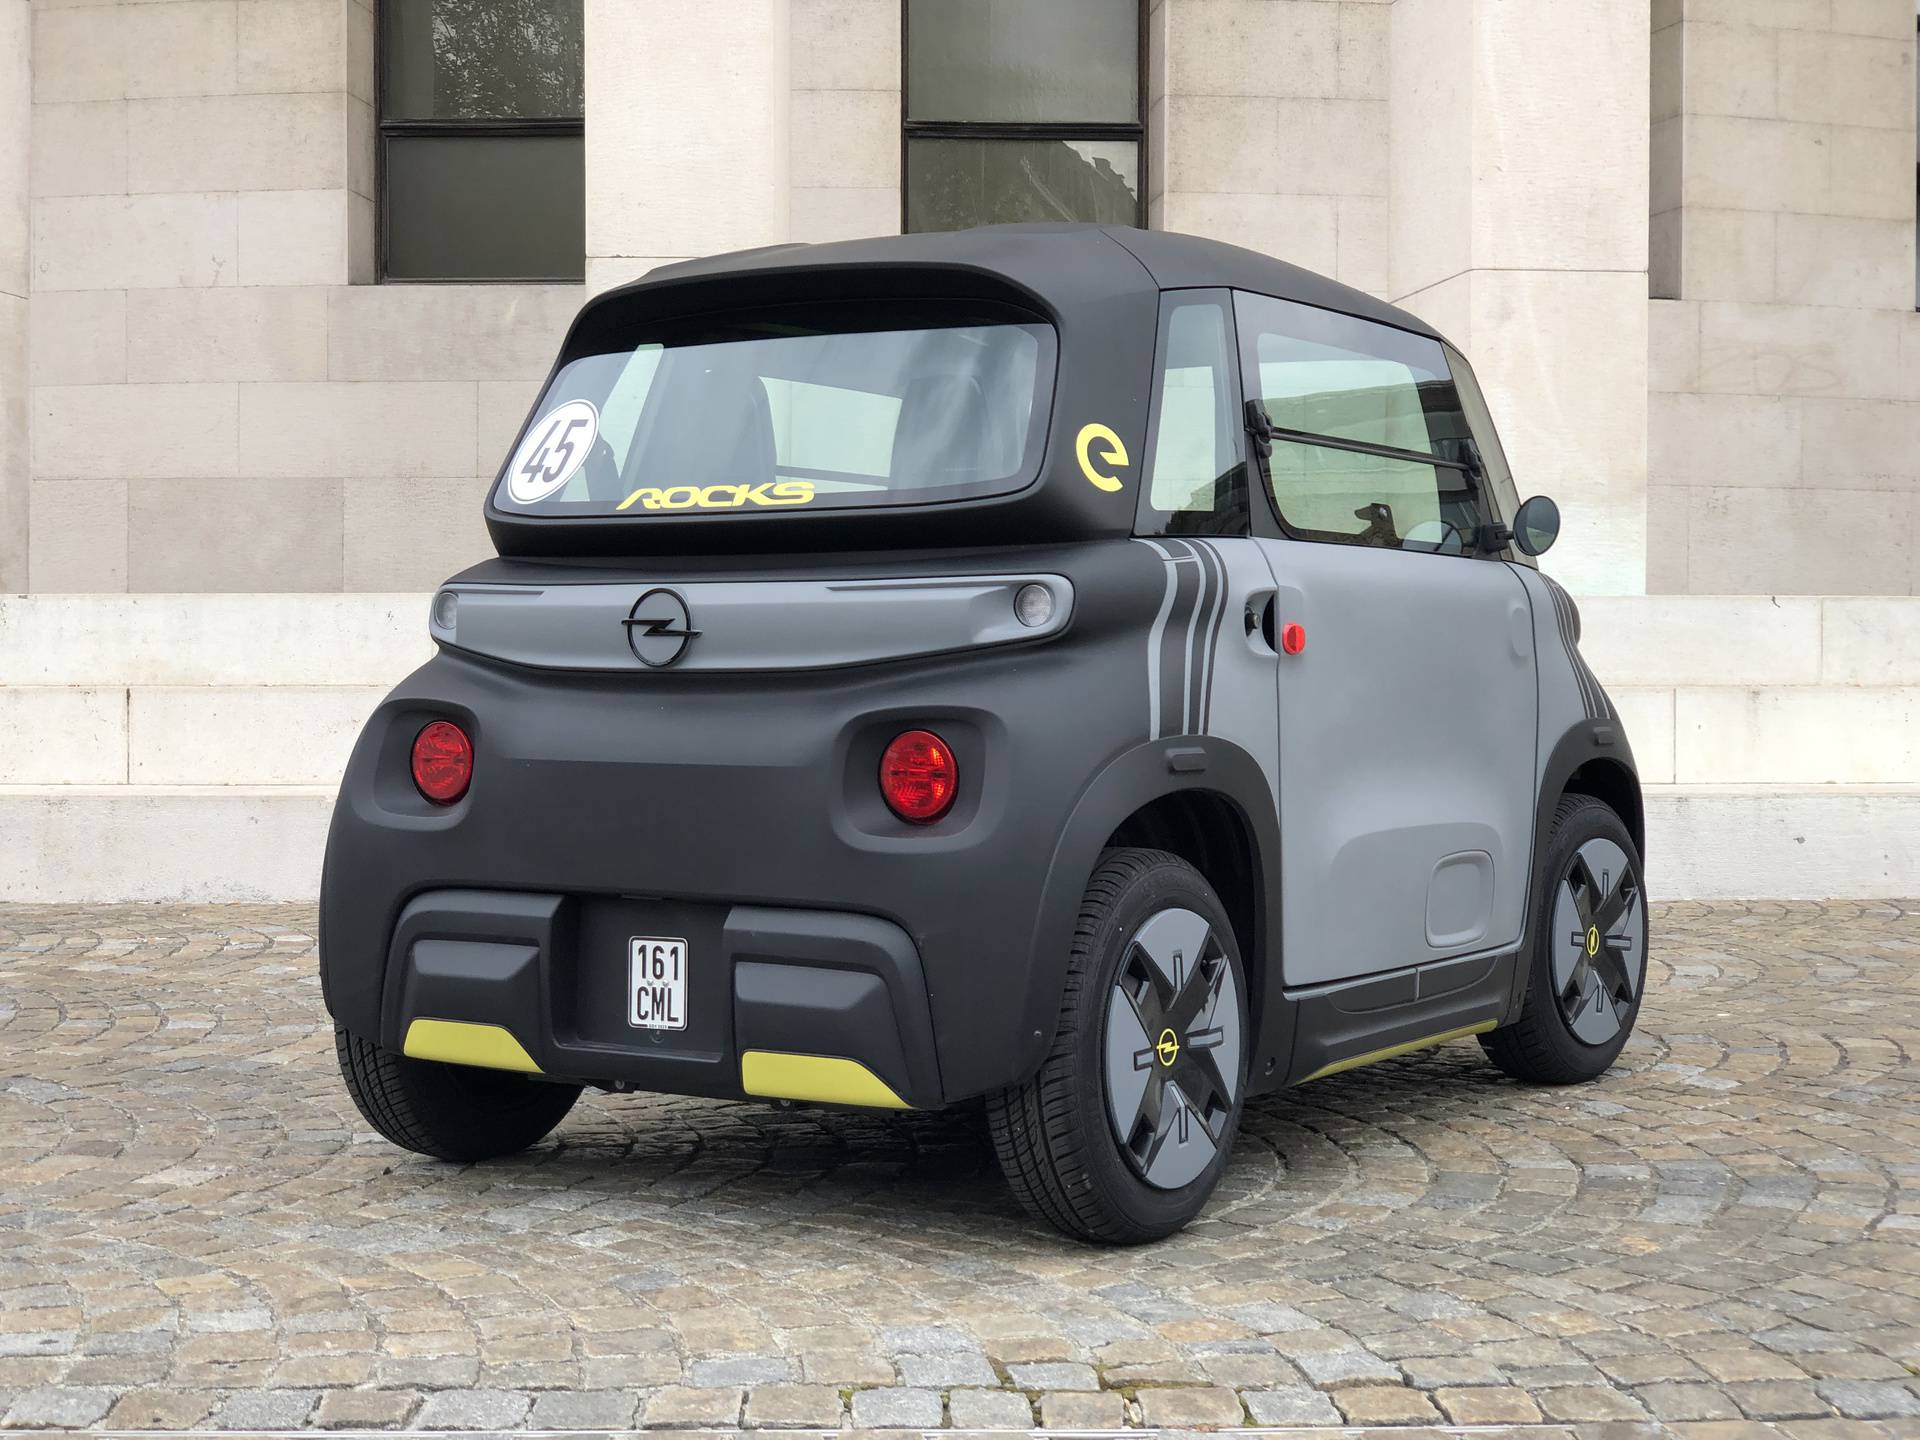 Otkrivamo sve o Opelu Rocksu: 'Auto' kojeg smiju voziti i djeca